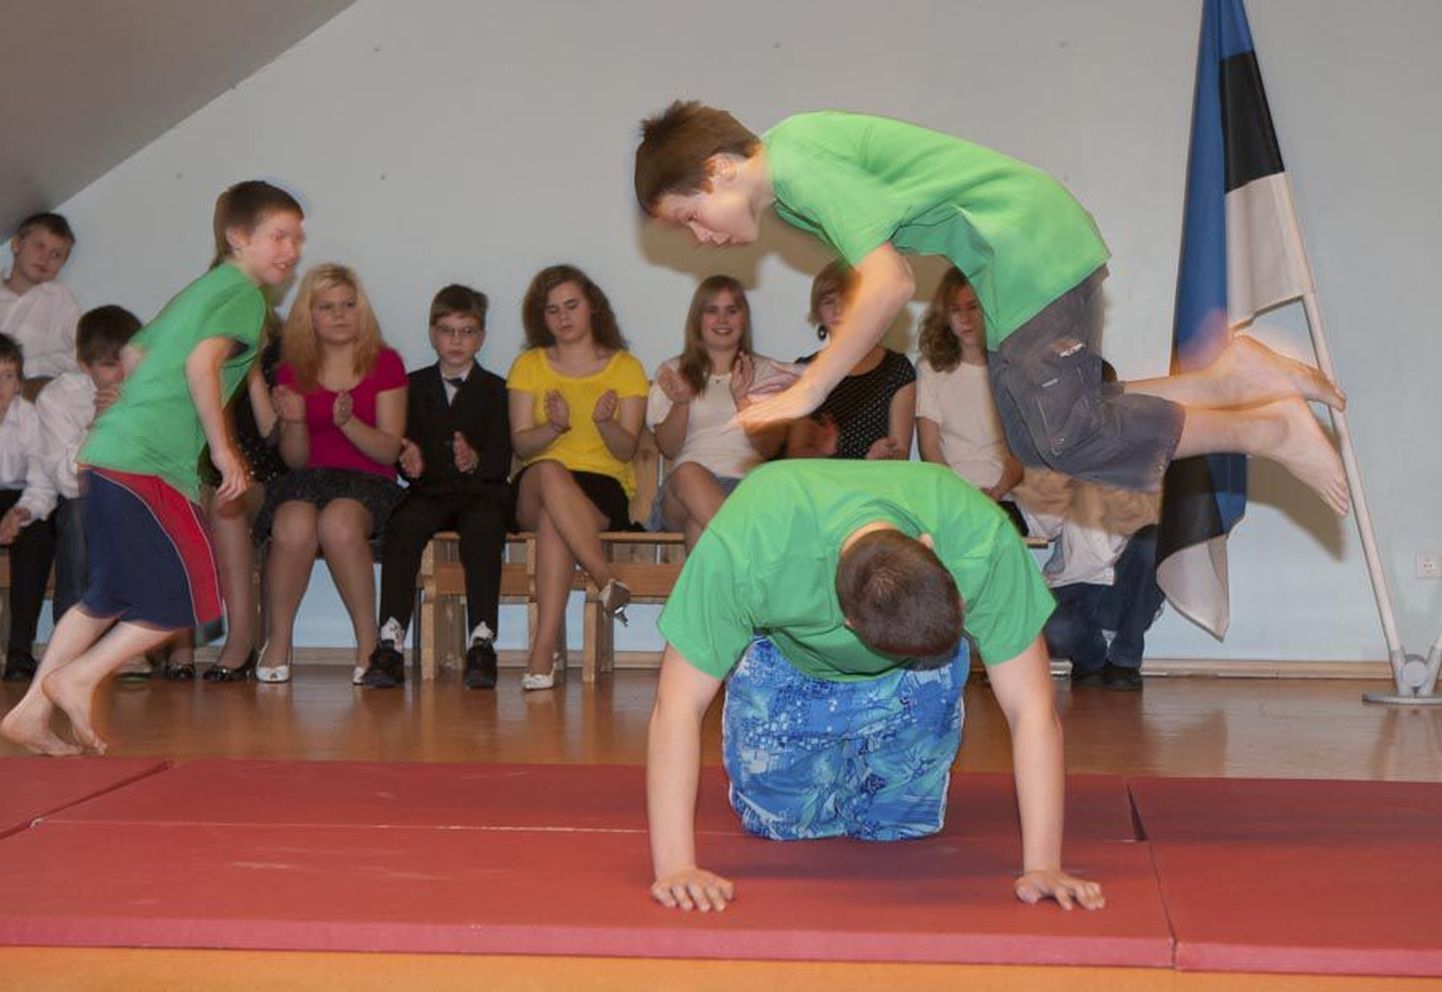 Õpilased esinesid kooliteemalisel avamispeol kolmes lavastatud koolitunnis. Muu hulgas näitasid nad akrobaatilisi harjutusi.